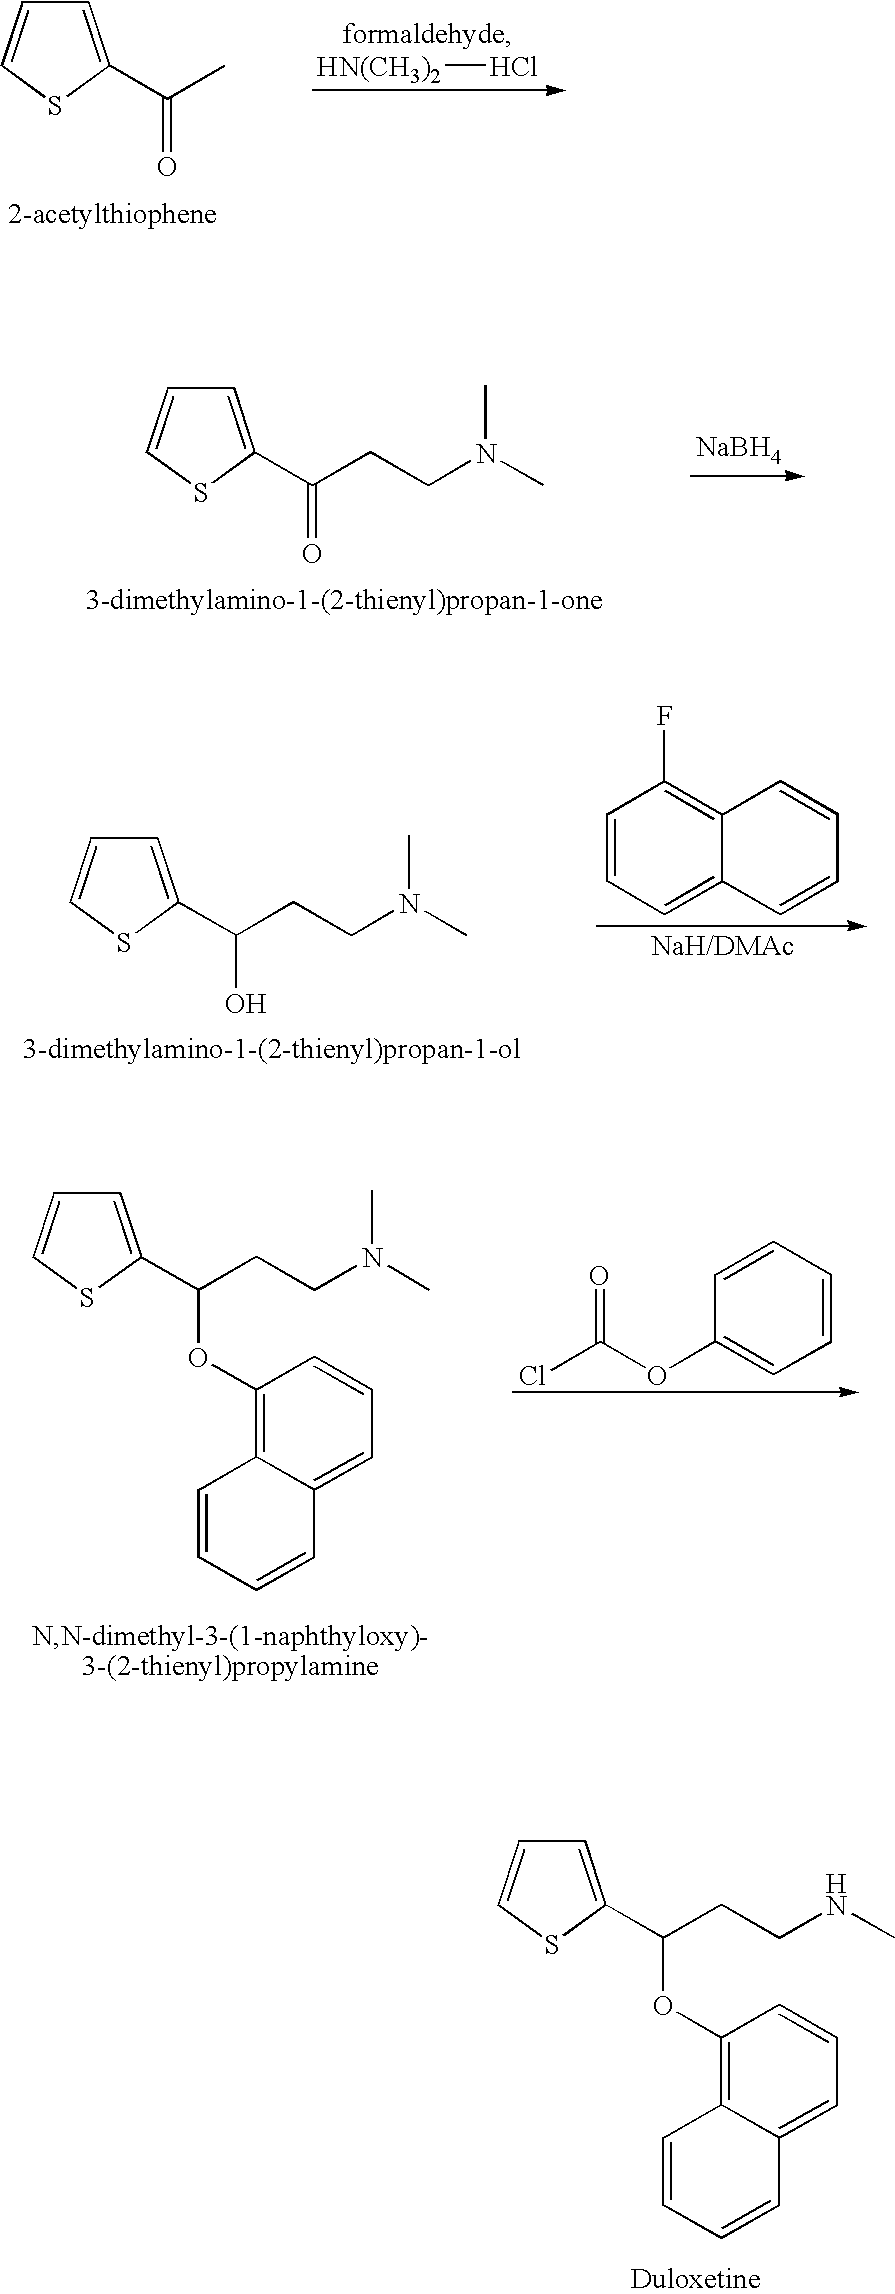 Process for preparing n-methyl-n-hydroxyl-3-(1-naphthyloxy)-3-(2-thienyl)propylamine derivative